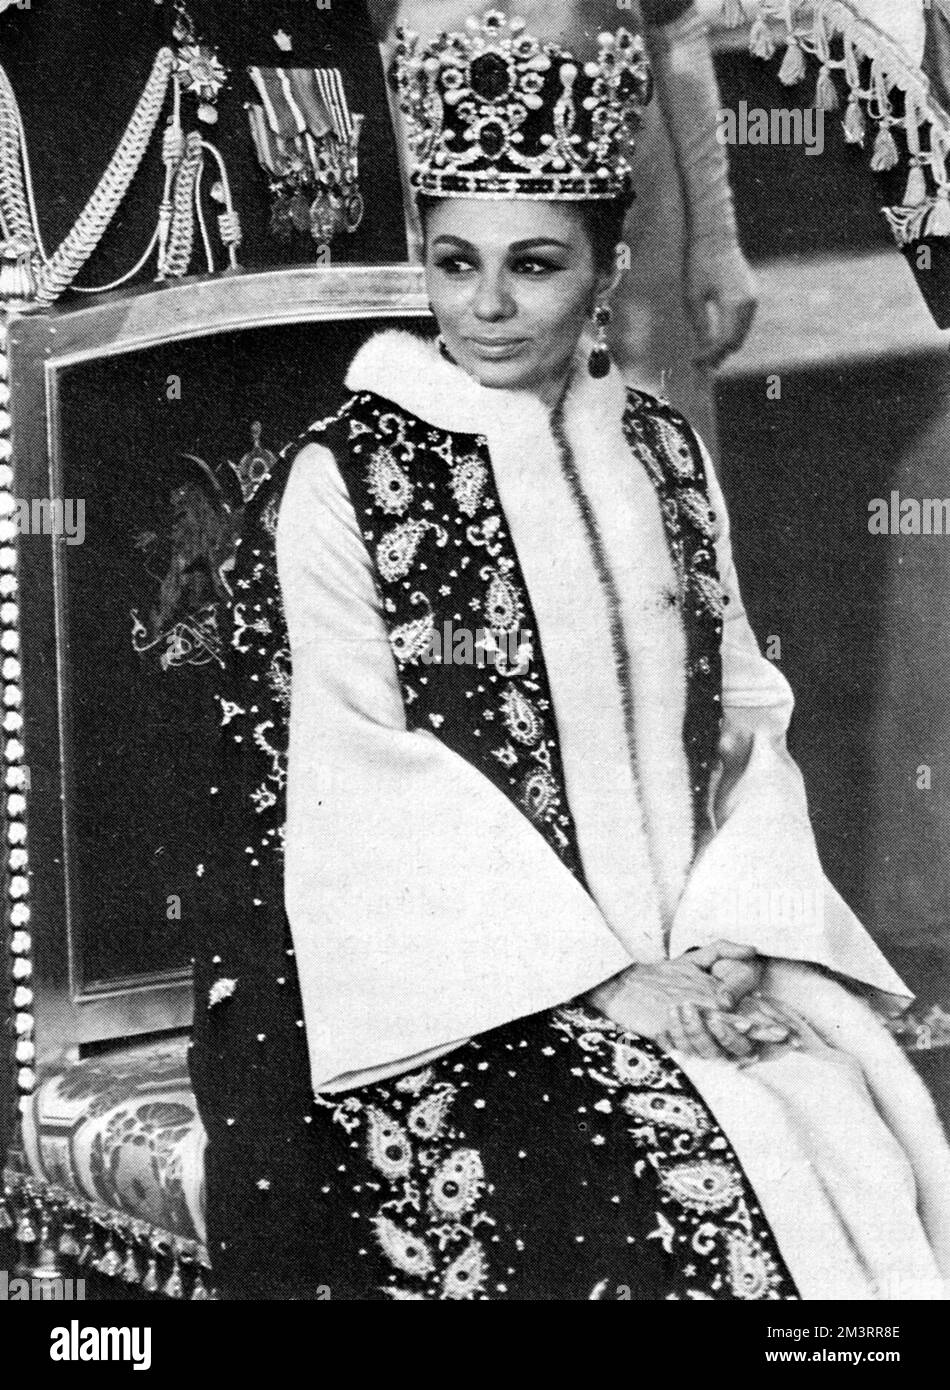 Königin Farah Dibah des Iran (1938-) bei der Krönung des Schahs des Iran Mohammad Reza Pahlavi (1919-1980). Am 26.. Oktober 1967, 26 Jahre nach seiner Herrschaft als Schah („König“), übernahm er in einer aufwendigen Krönungszeremonie in Teheran den alten Titel Shahanshah („Kaiser“ oder „König der Könige“). Datum: 1967 Stockfoto